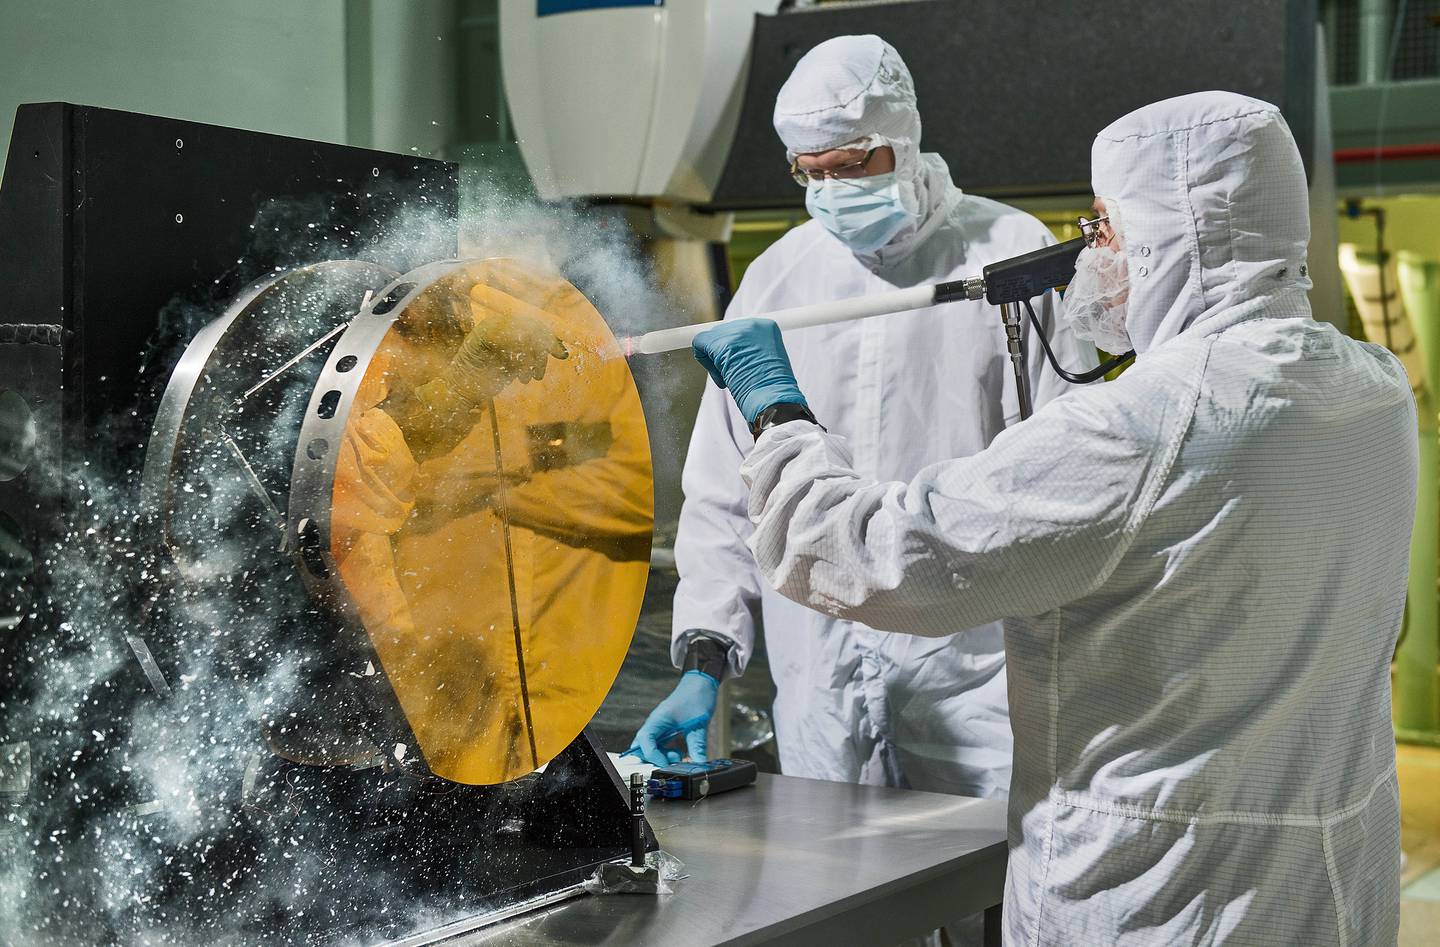 La máxima promesa del telescopio Webb es una mayor comprensión en torno a dos preguntas fundamentales: ¿De dónde venimos y estamos solos? Arriba, los ingenieros trabajan en un espejo de prueba para el Telescopio Espacial James Webb en el Centro de Vuelo Espacial Goddard de la NASA en Maryland en 2015.Fuente: NASA / Chris Gunndfd